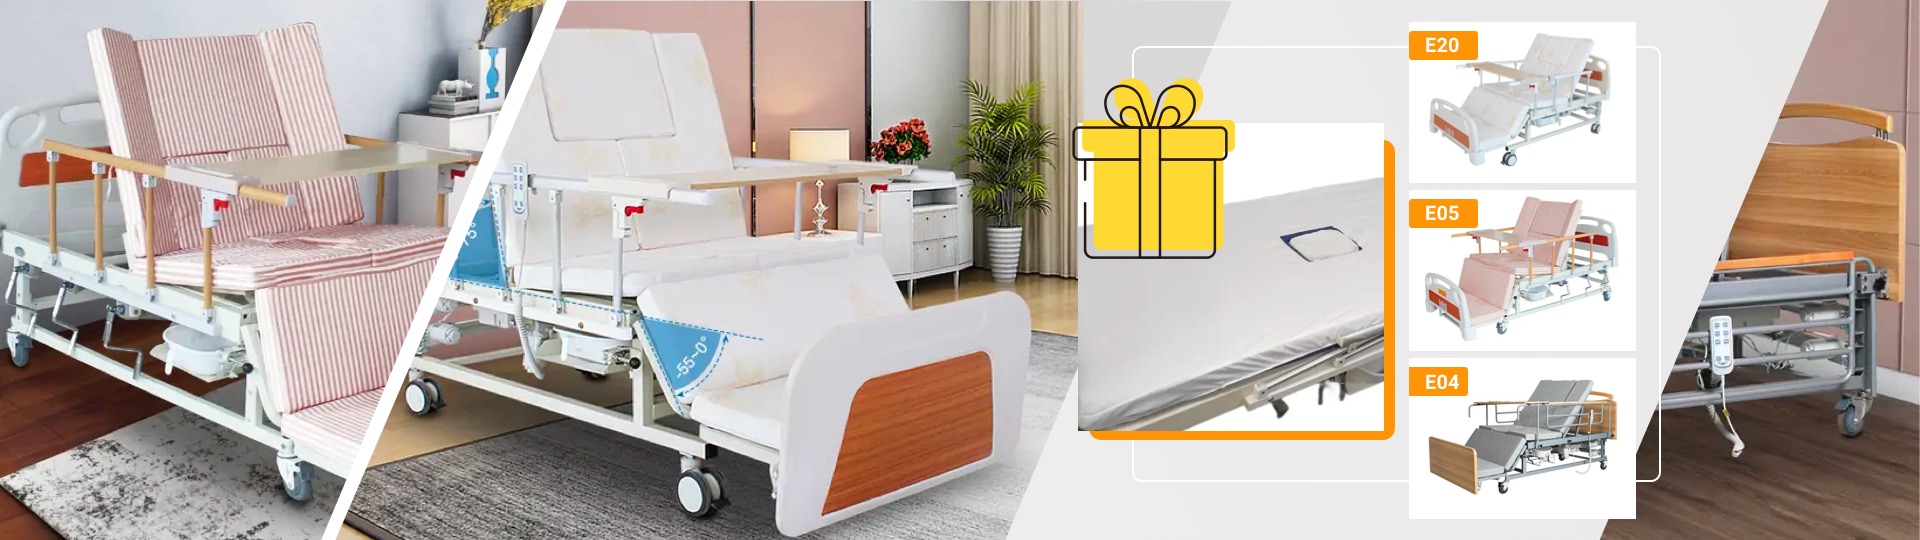 непромокаемая простынь в подарок при покупке кровати моделей MIRID E05, MIRID E20 и MIRID E04